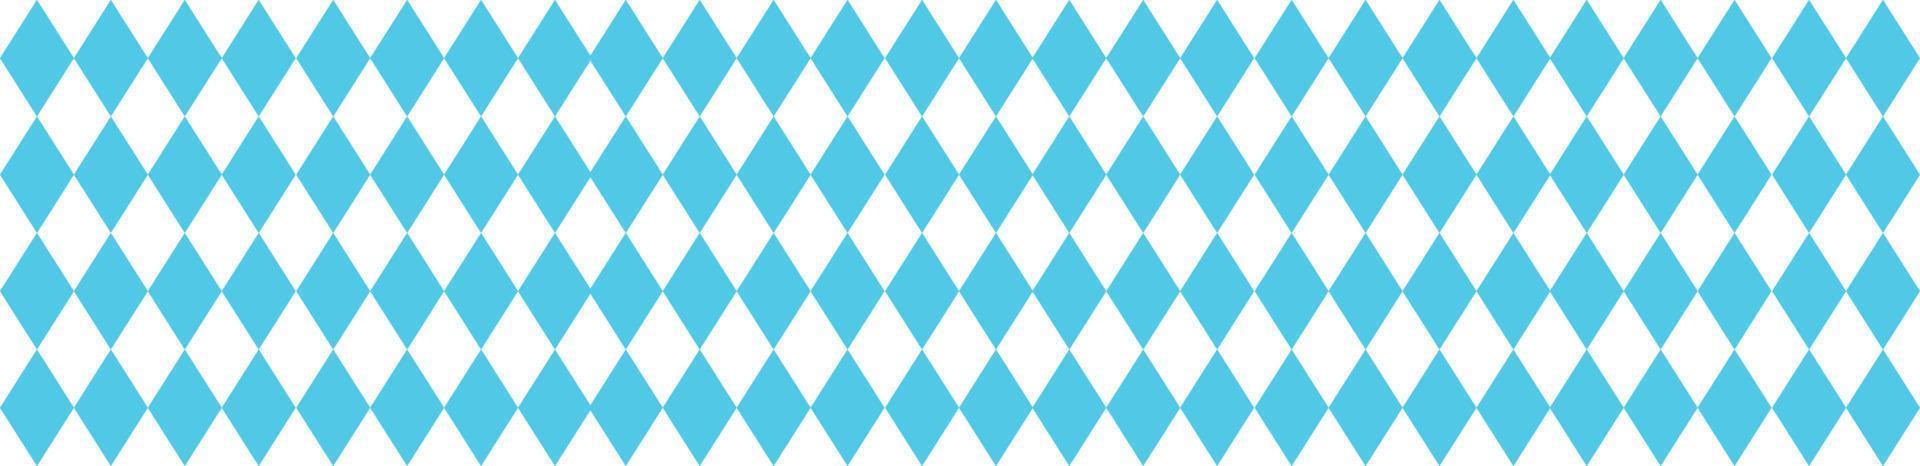 padrão bávaro para oktoberfest. textura de losango azul alemão. ilustração vetorial vetor